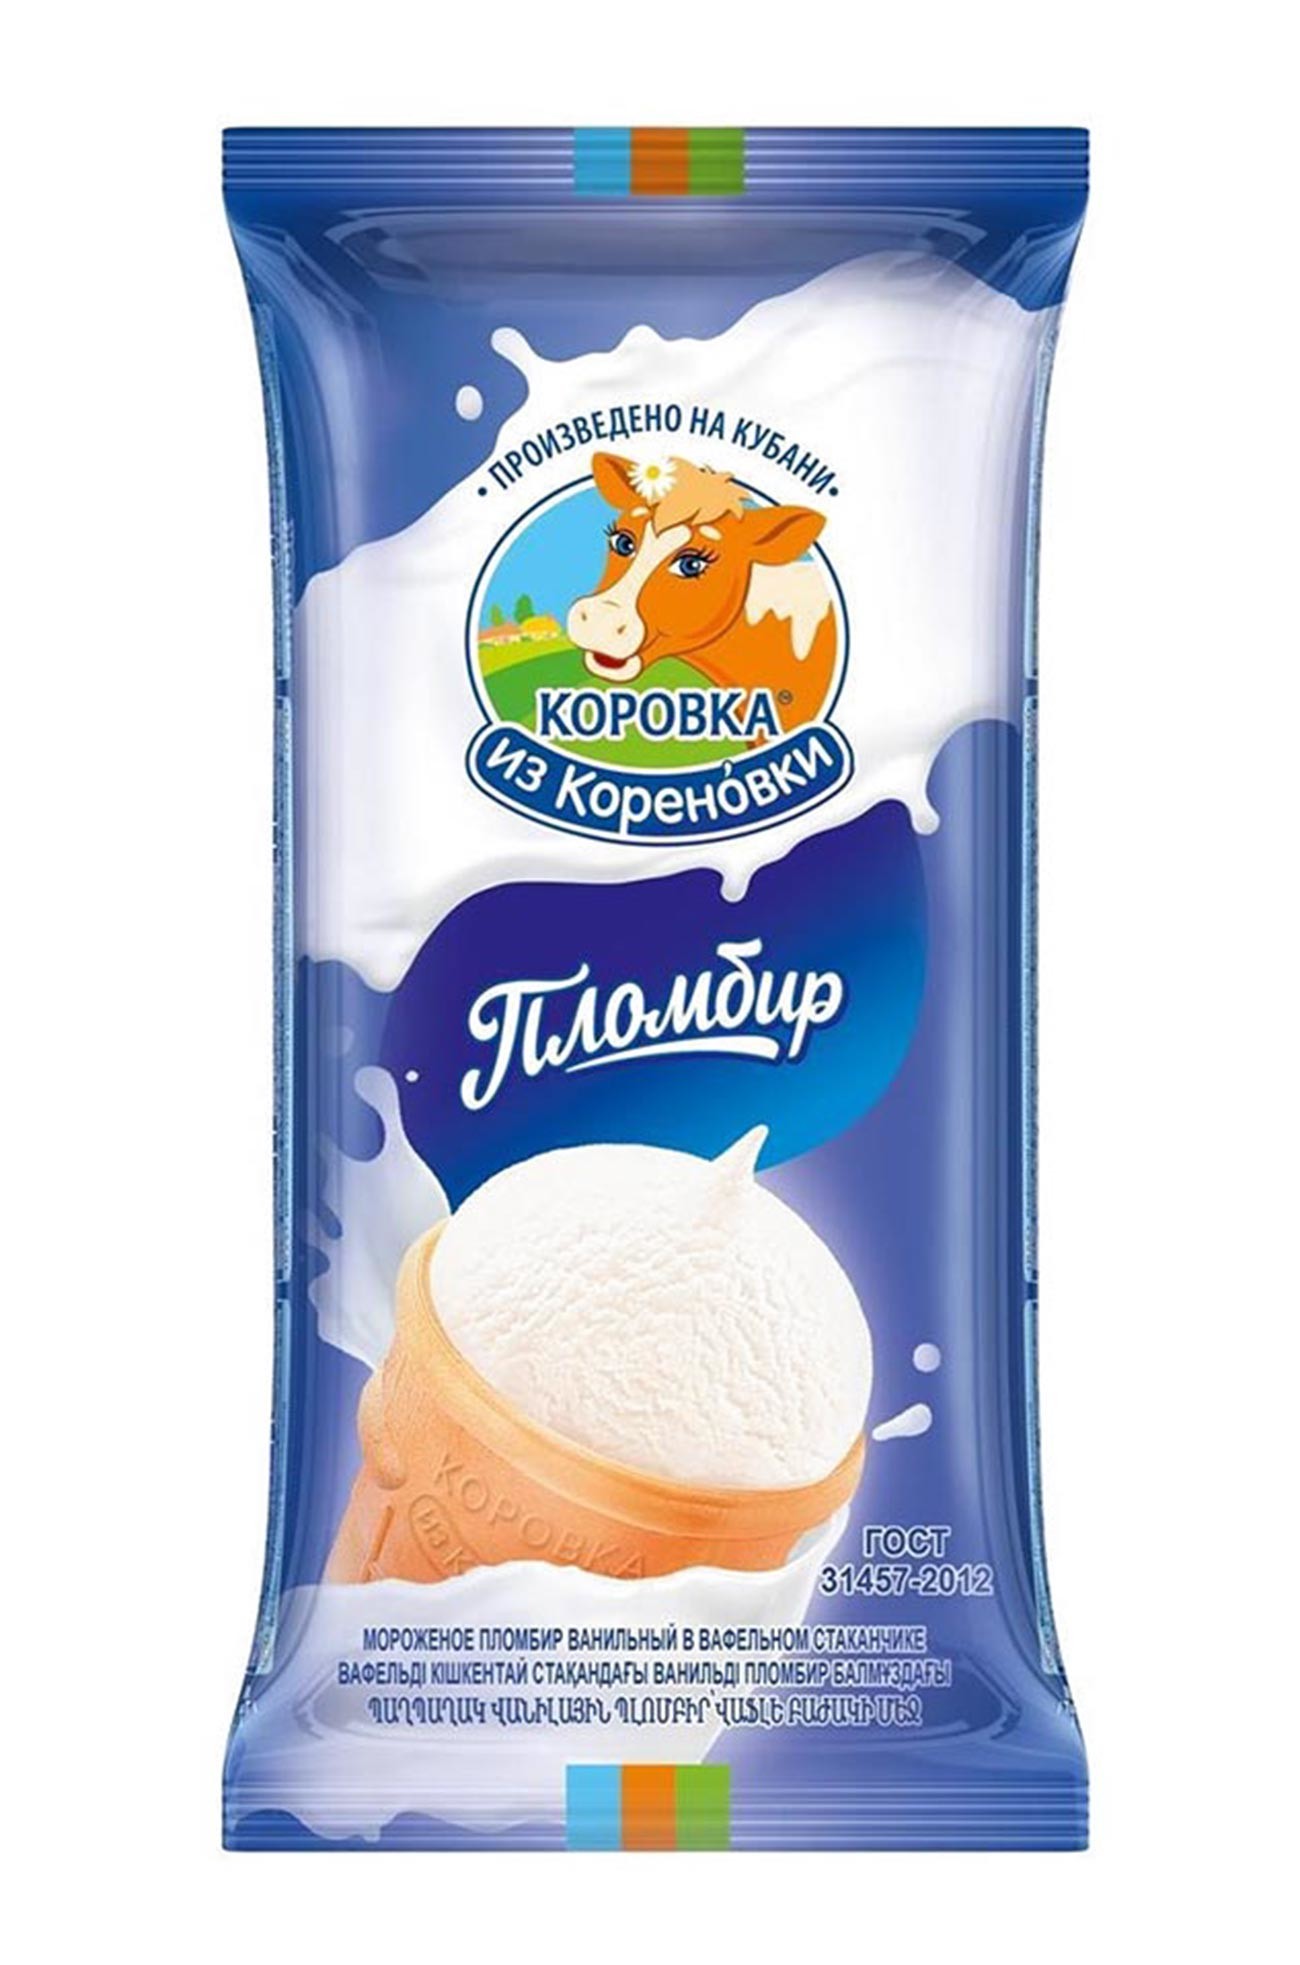 какое российское мороженое экспортируют в сша